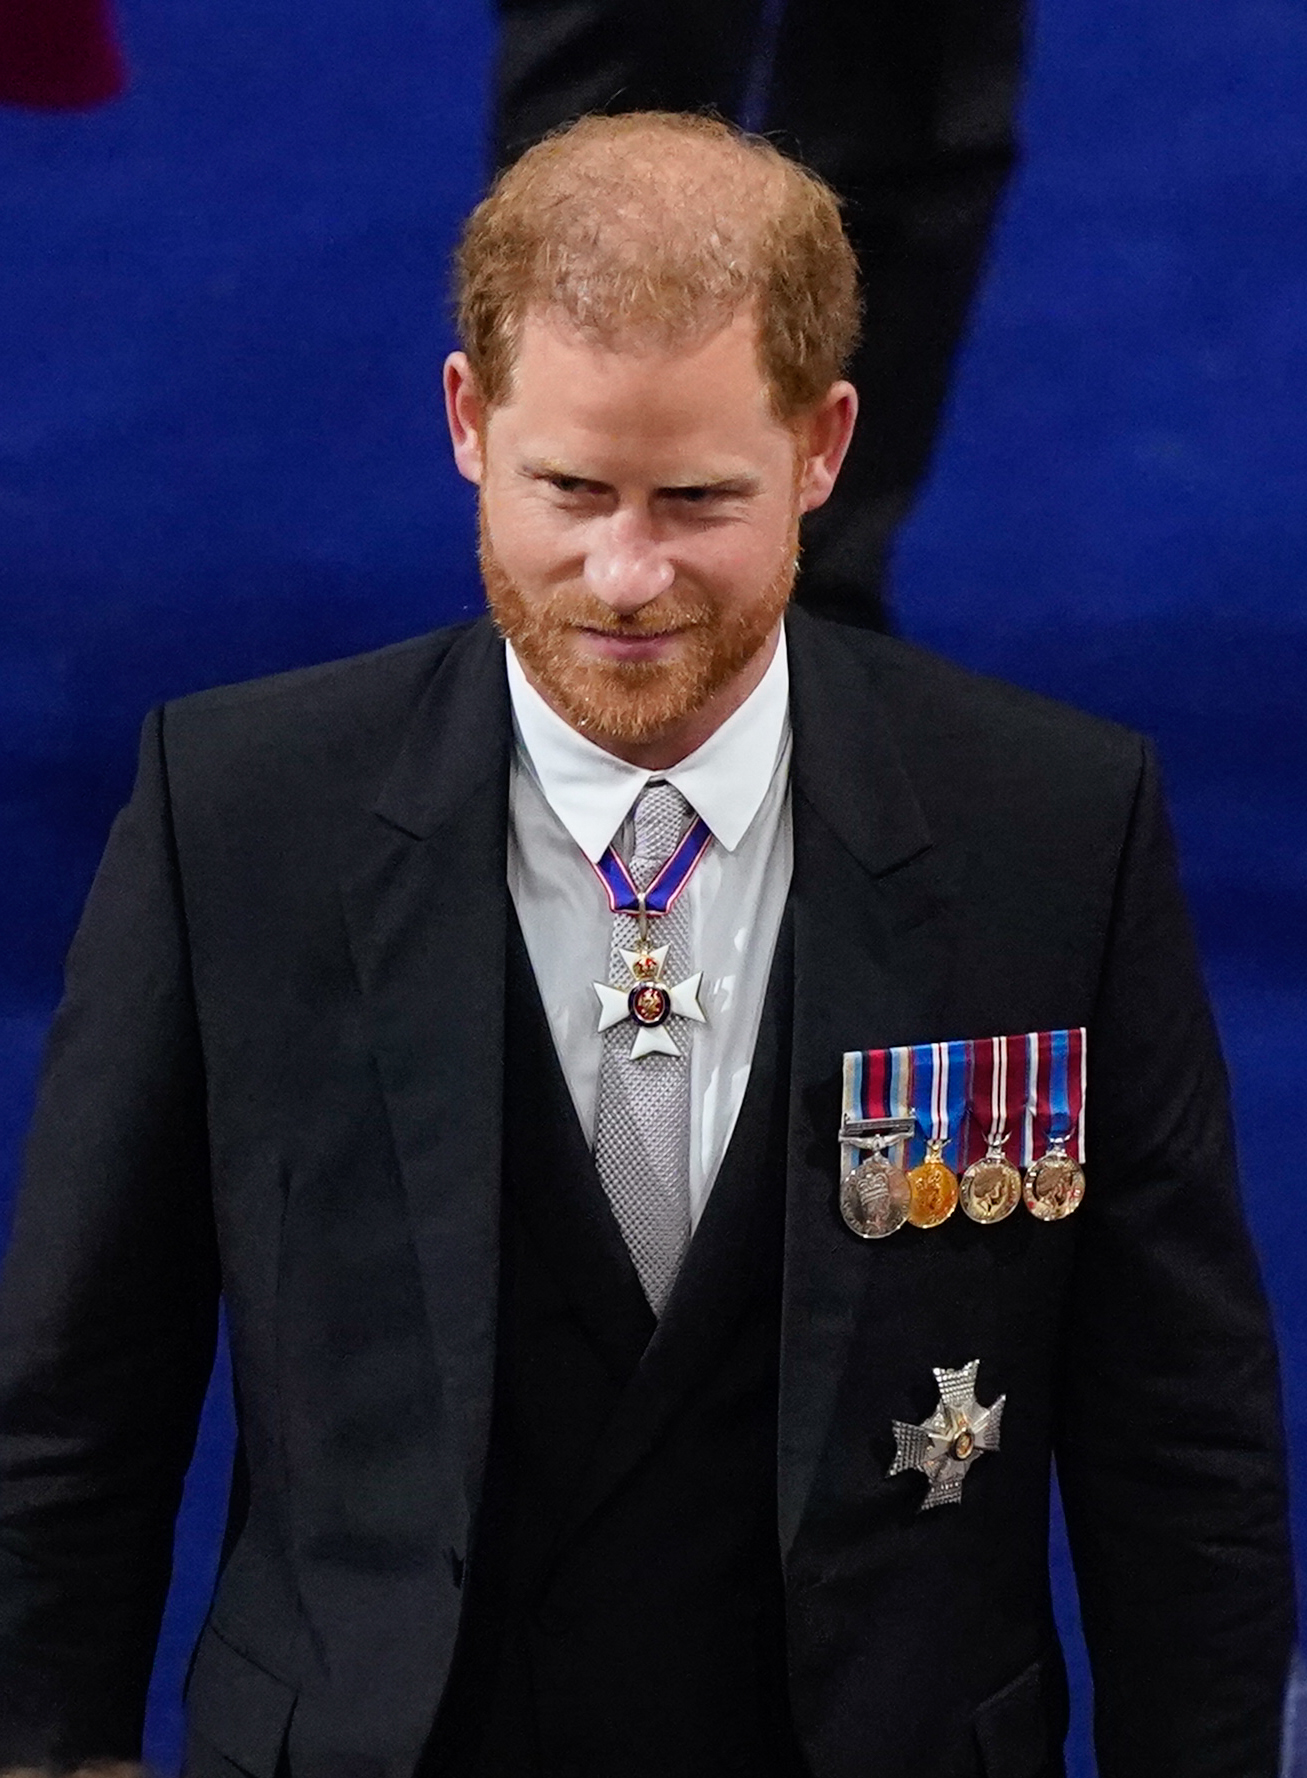 Prinz Harry bei der Krönungszeremonie von König Charles III. und Königin Camilla in London, England am 6. Mai 2023 | Quelle: Getty Images